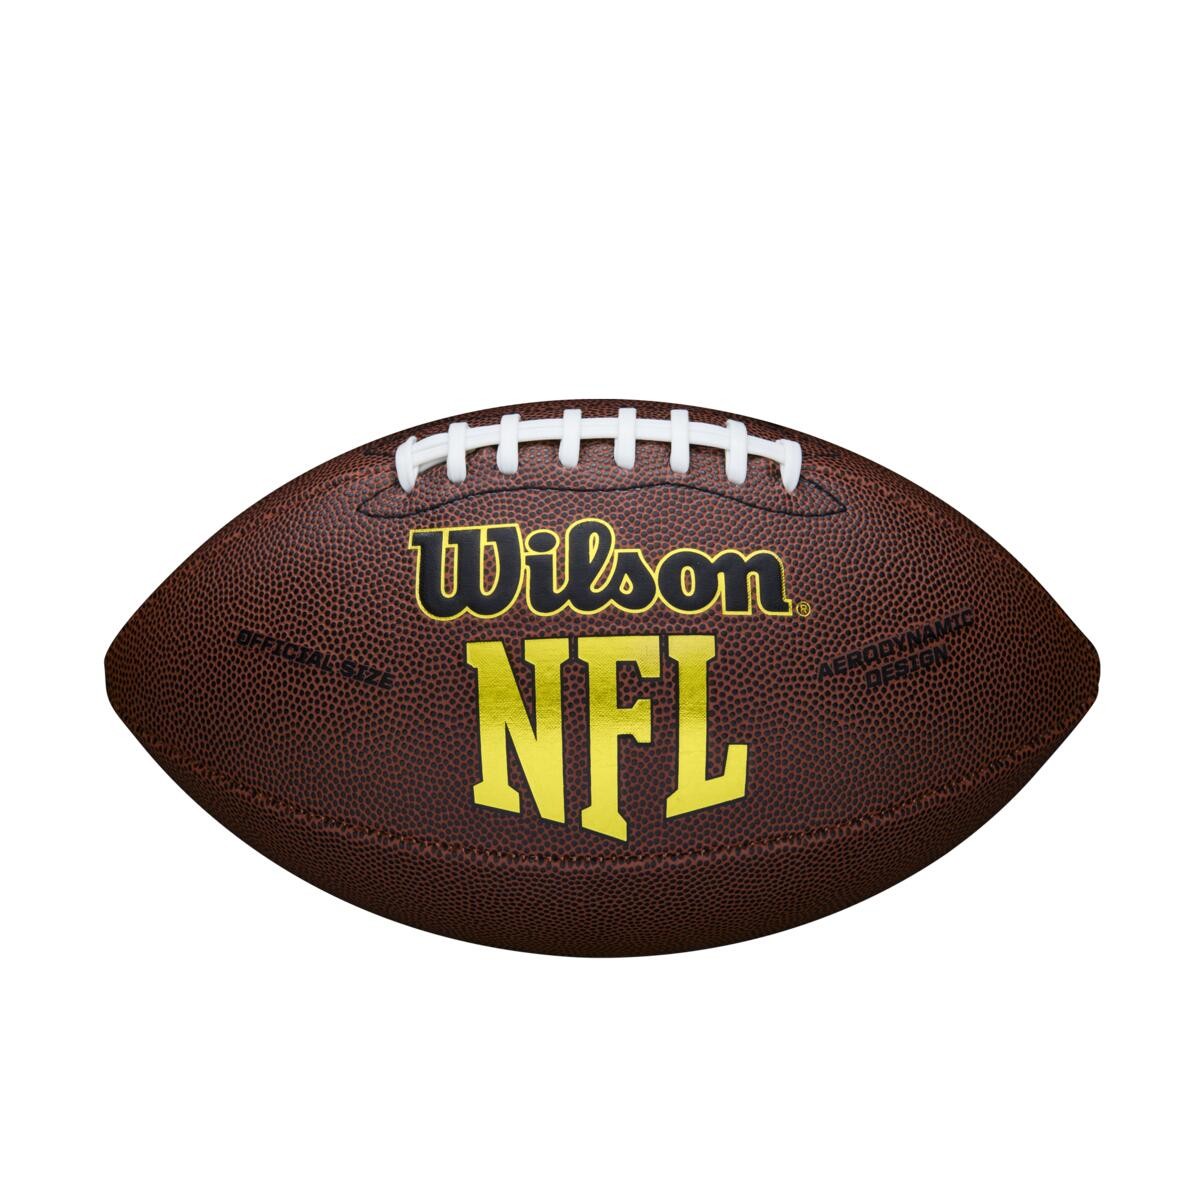 Ballon de football Wilson CIAU